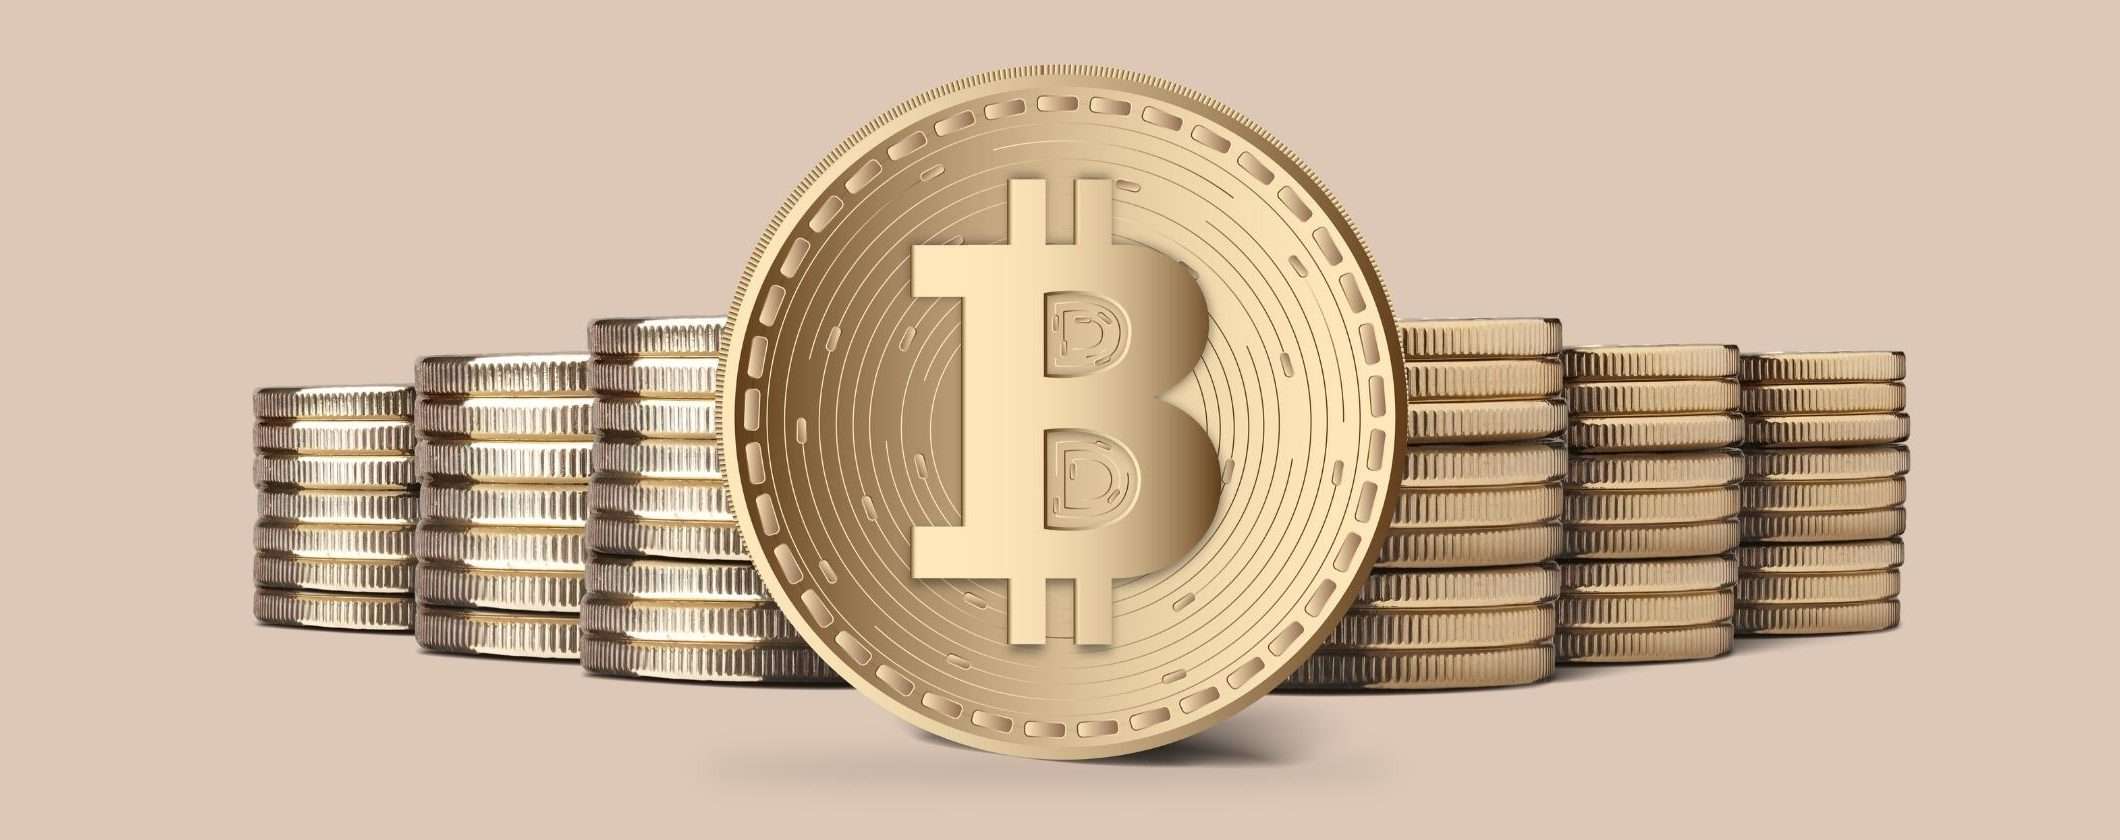 Il prezzo di Bitcoin scende di nuovo: momento d'oro per acquistarlo